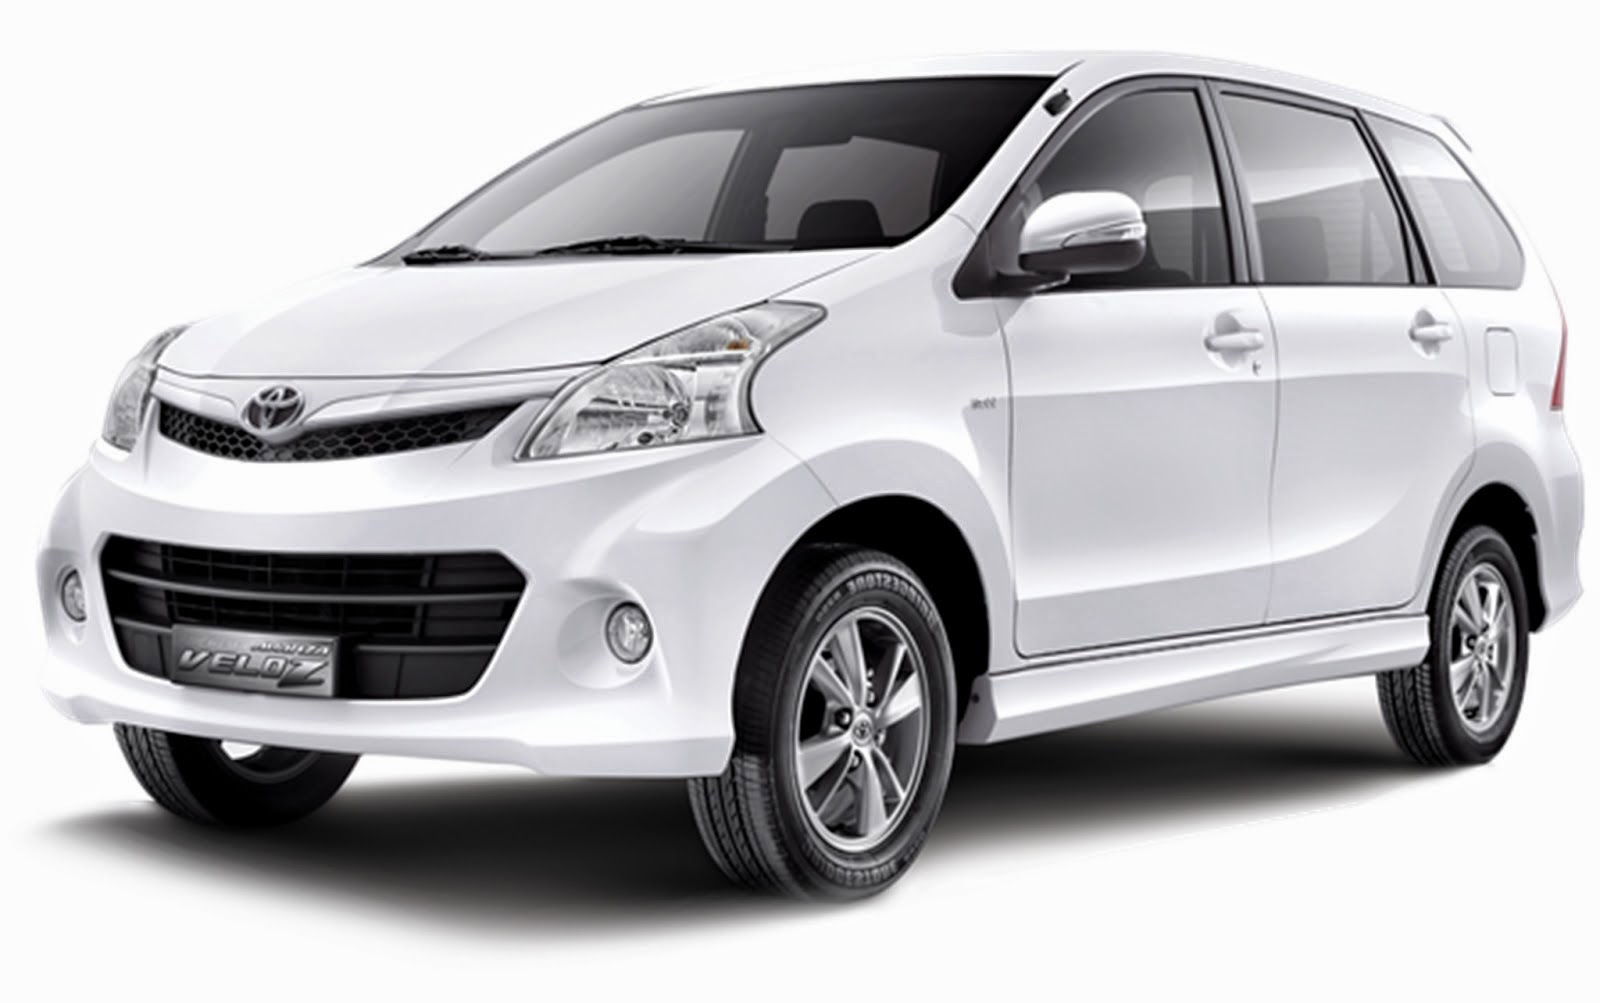 Rental Mobil Karawaci Tangerang 0857 8854 5754 Solusindo Rental